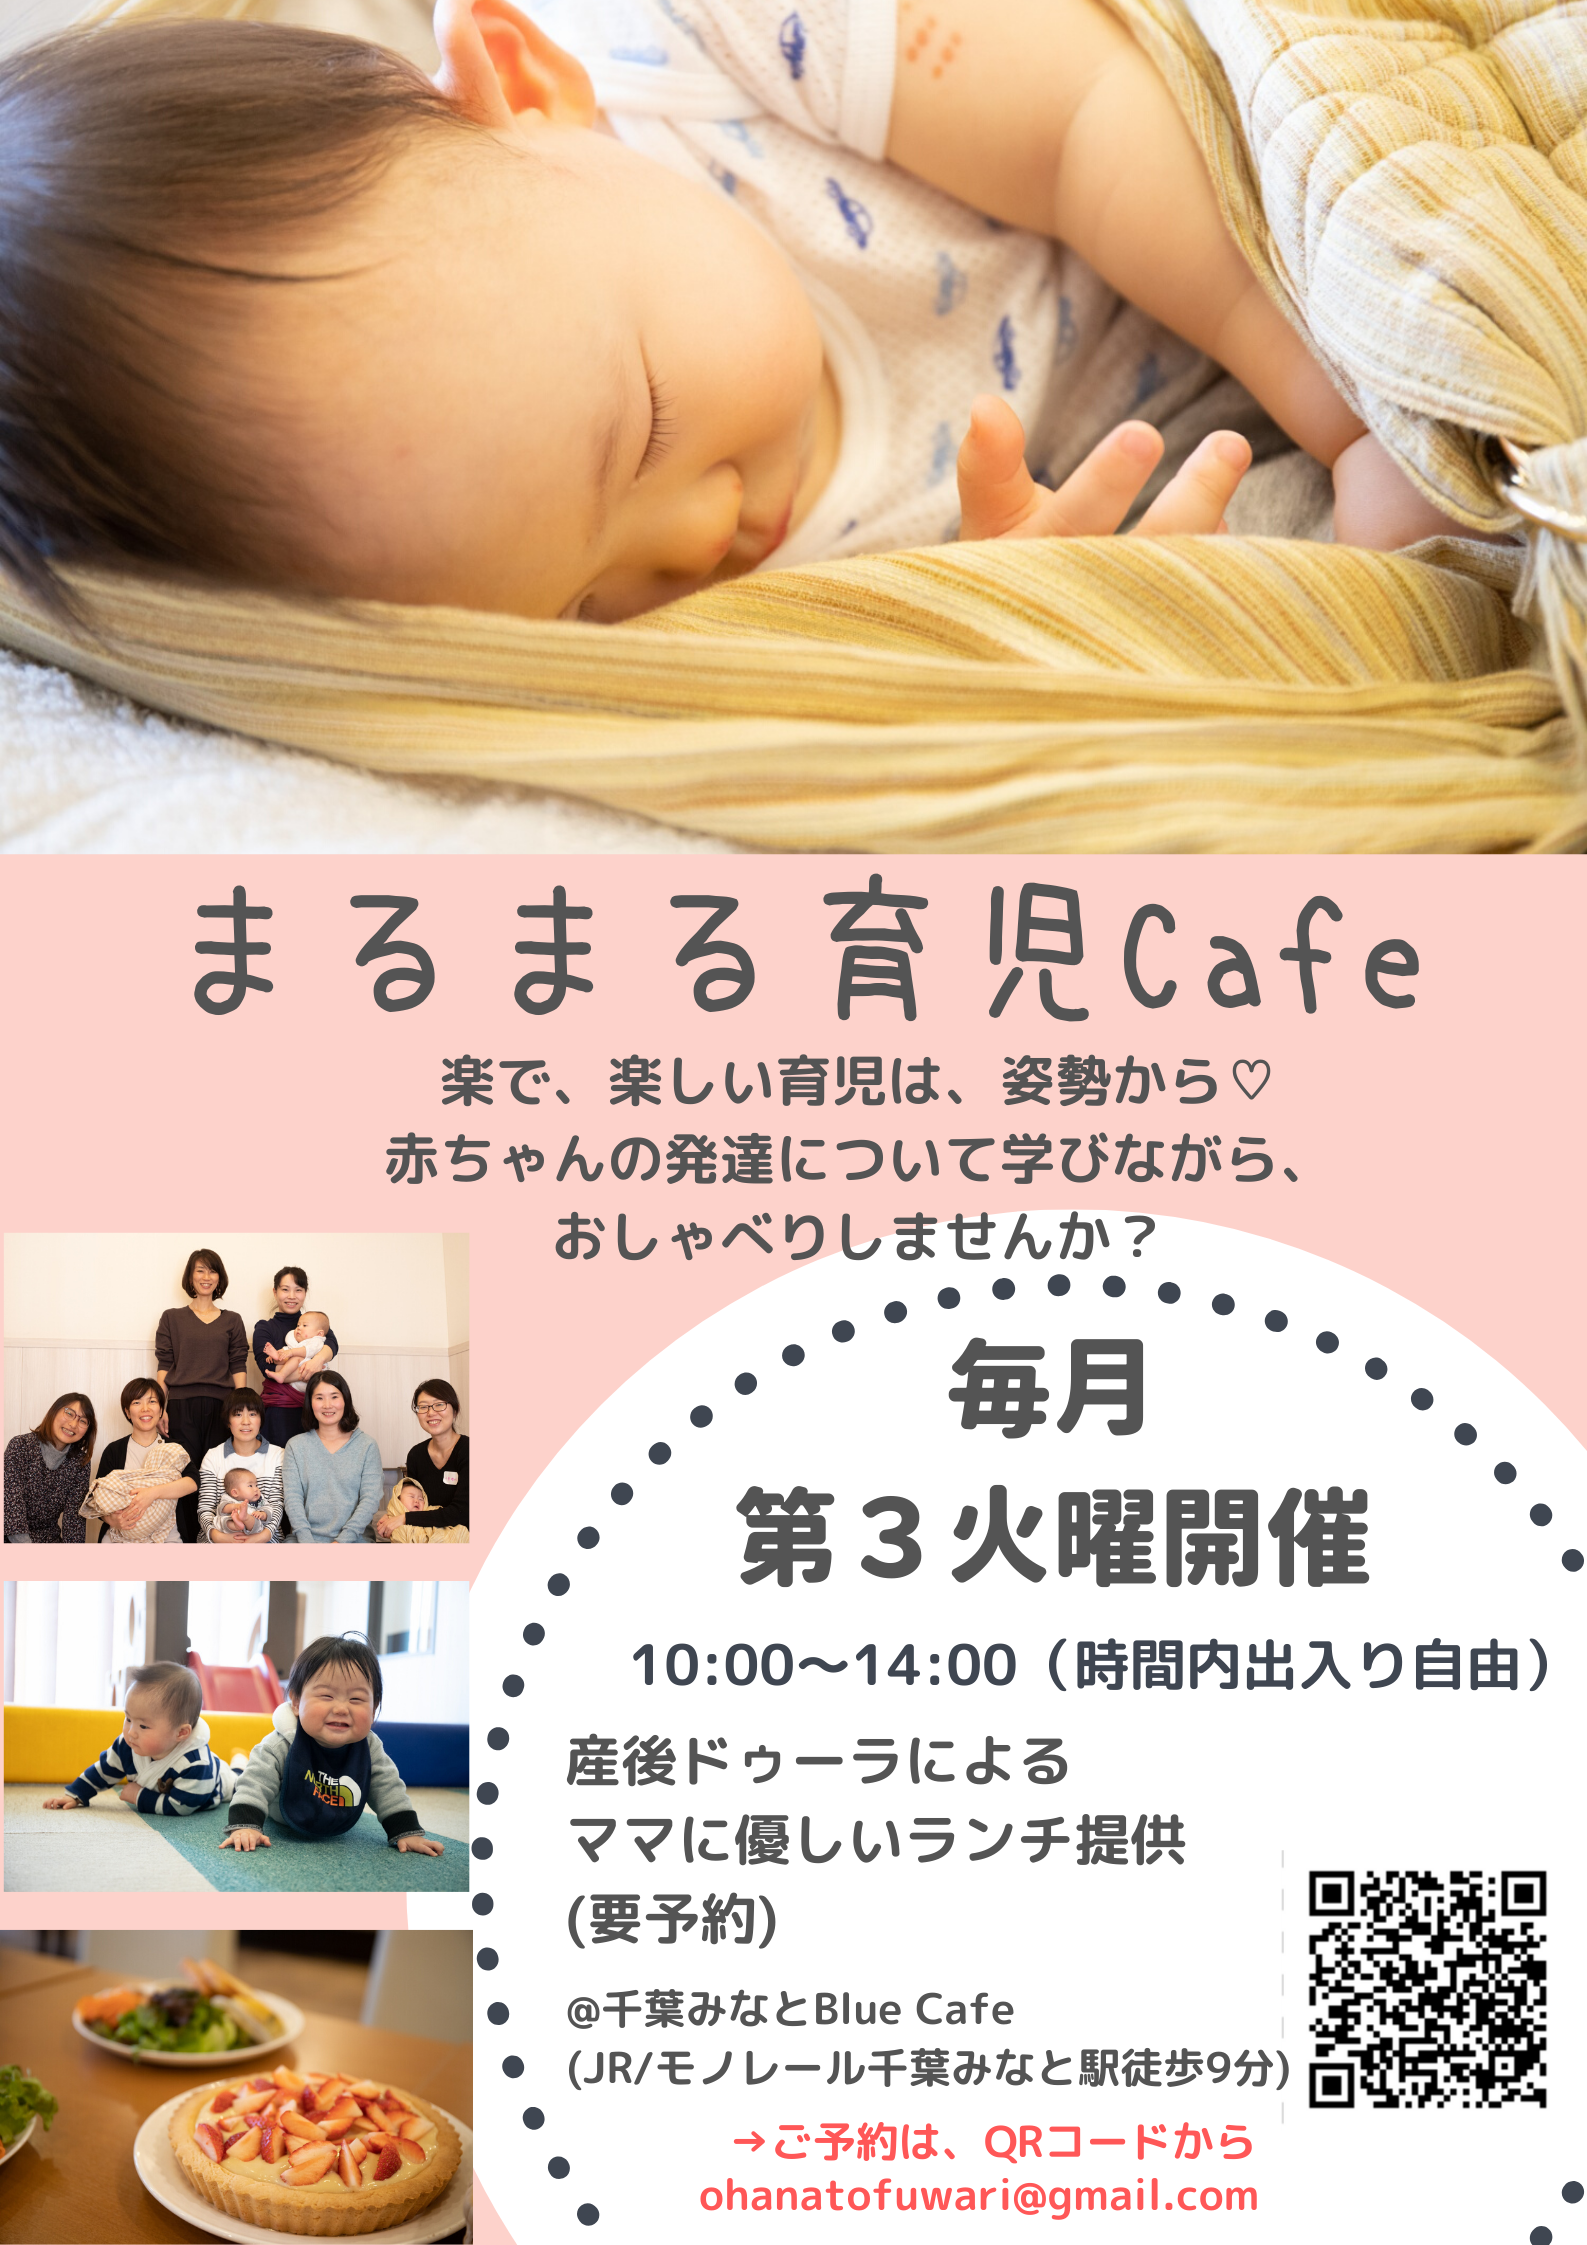 11 19 火 赤ちゃんcafe 開催 ちばみなとjp